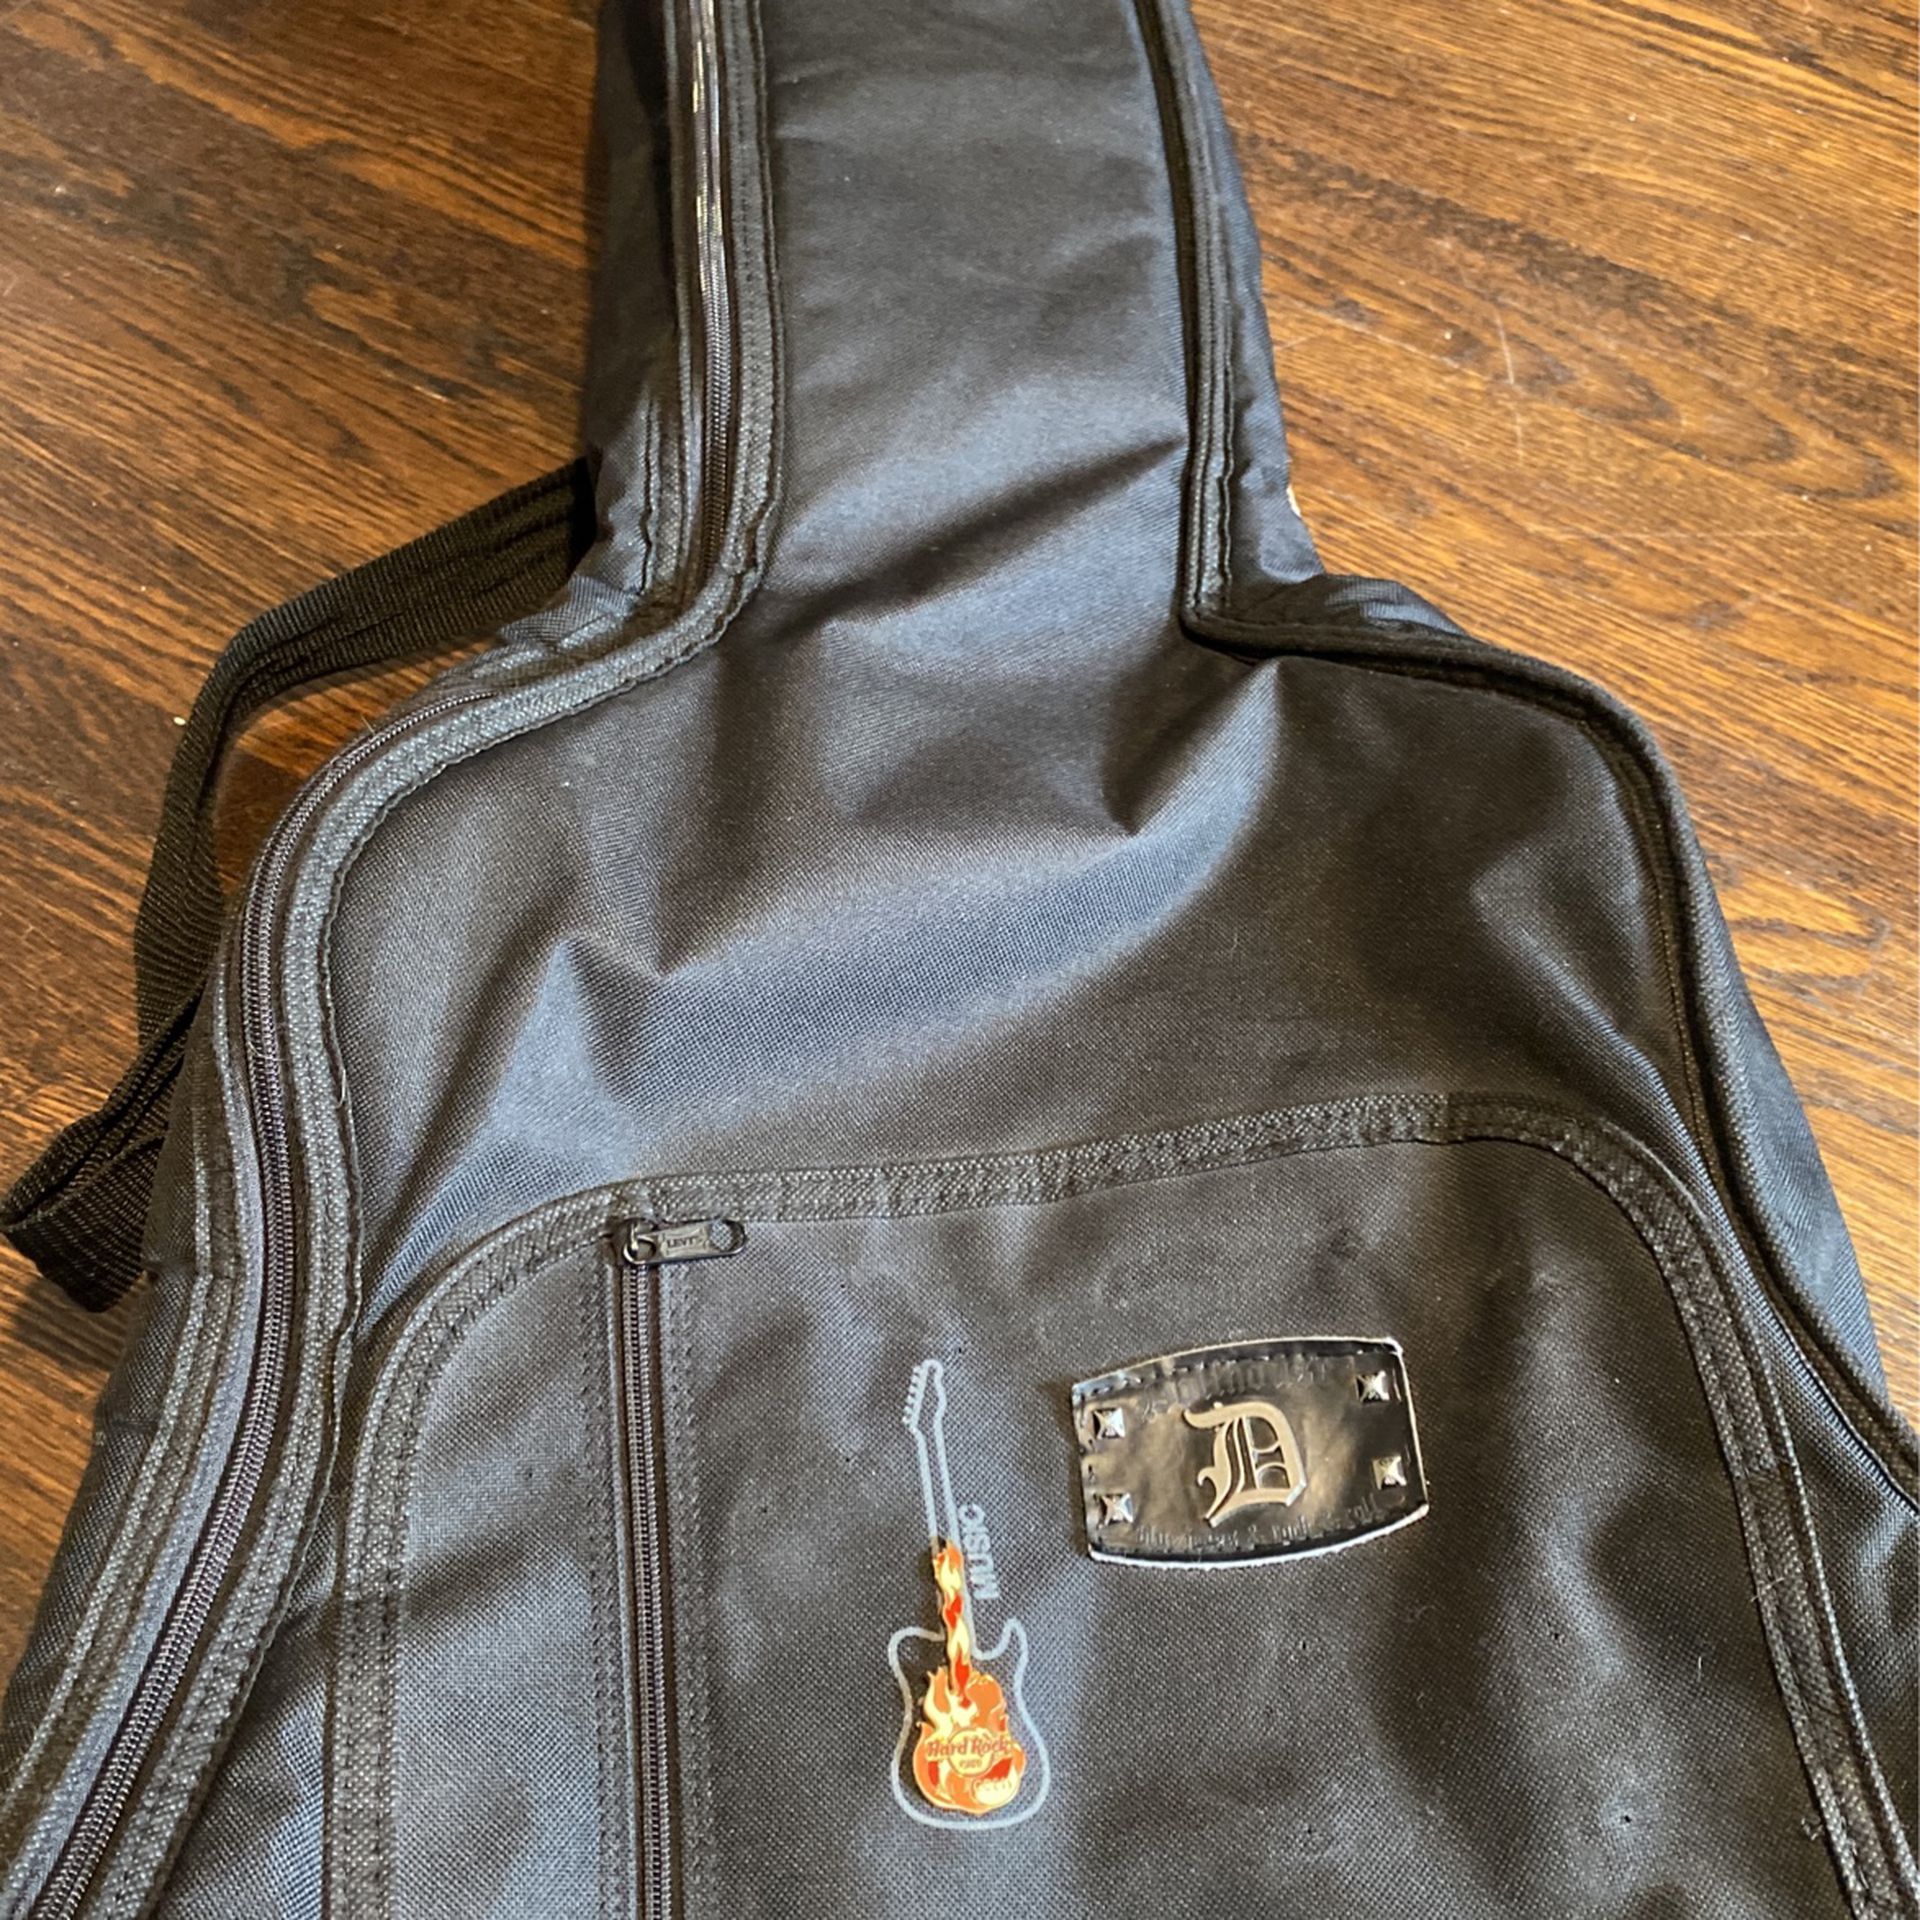 Guitar travel bag